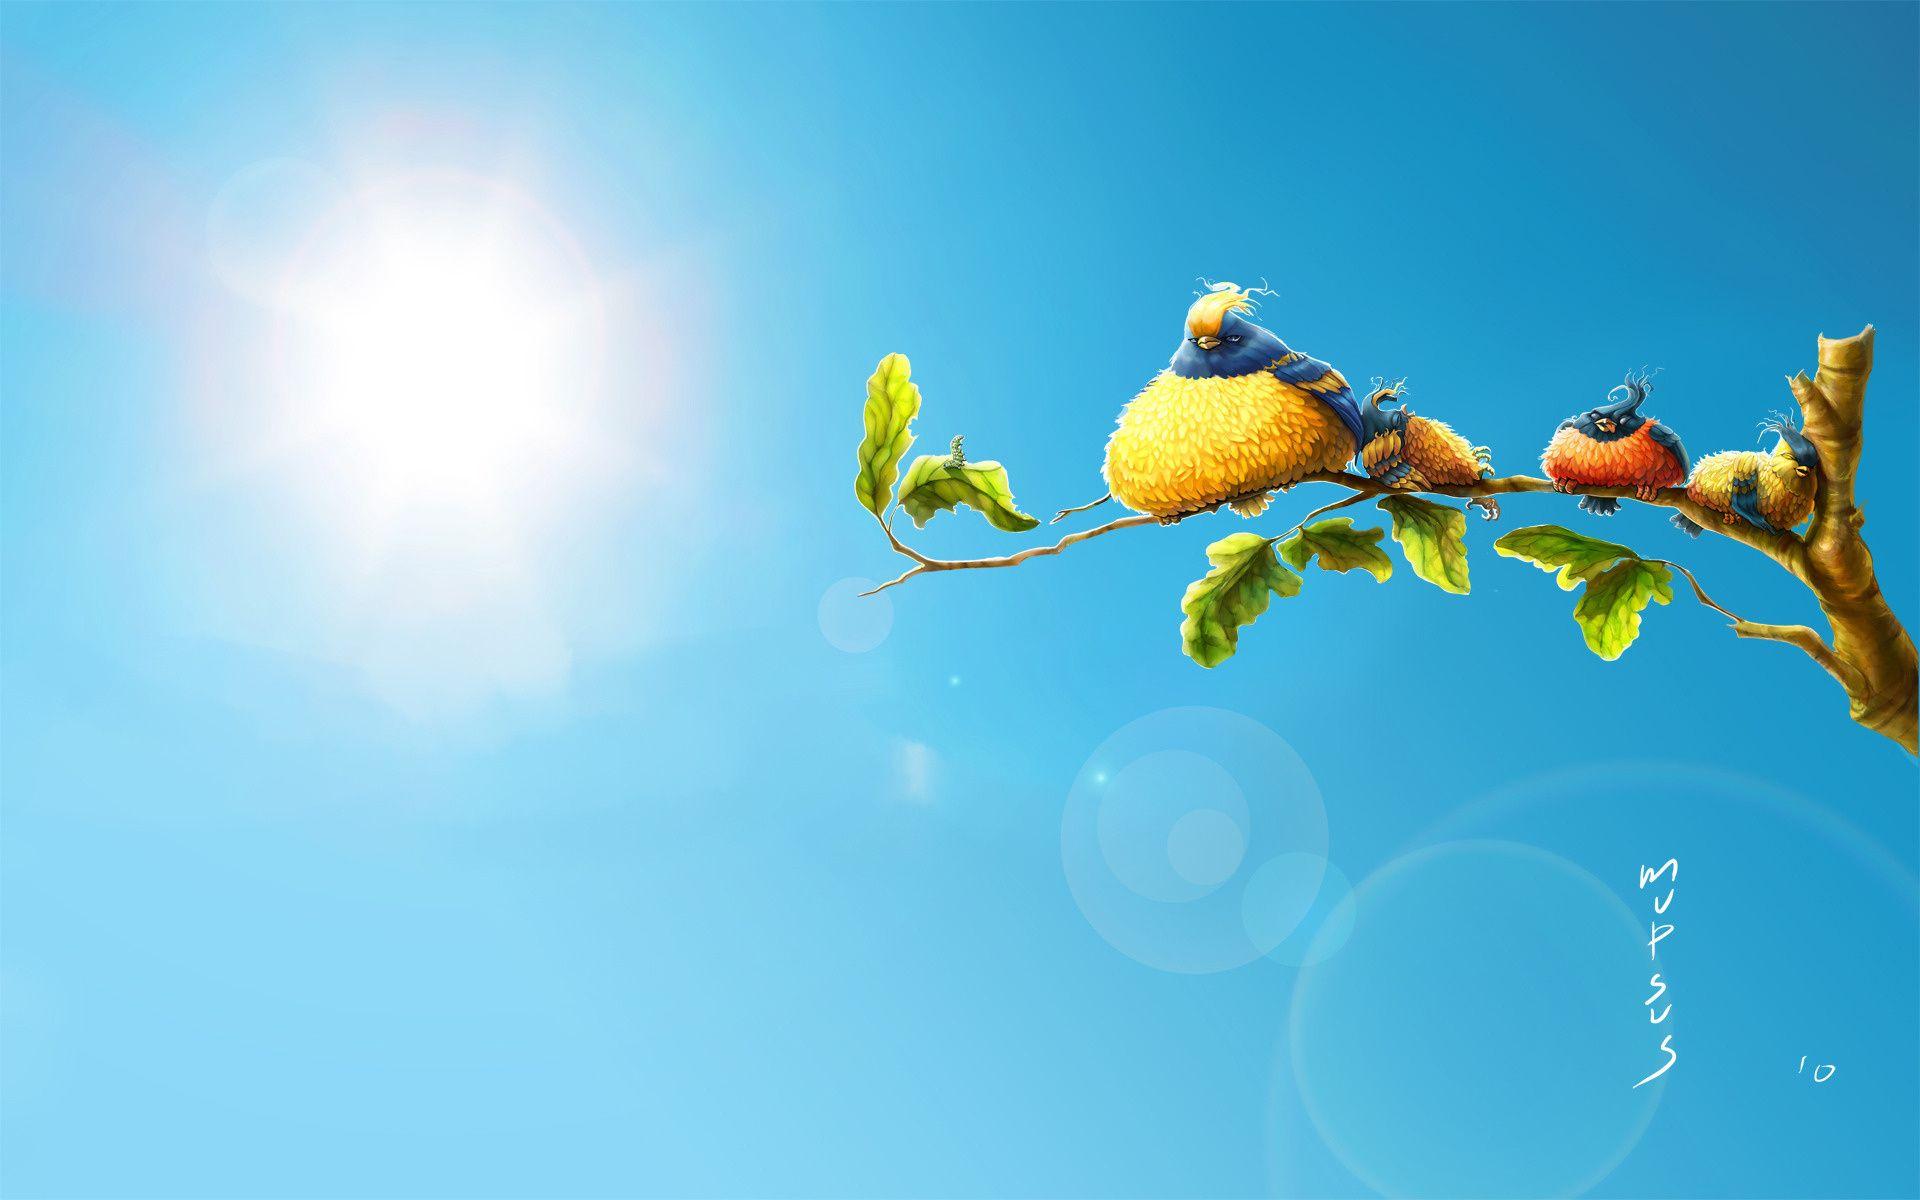 1920x1200 Angry Birds động vật hoạt hình thiên nhiên mặt trời bầu trời hài hước hình nền